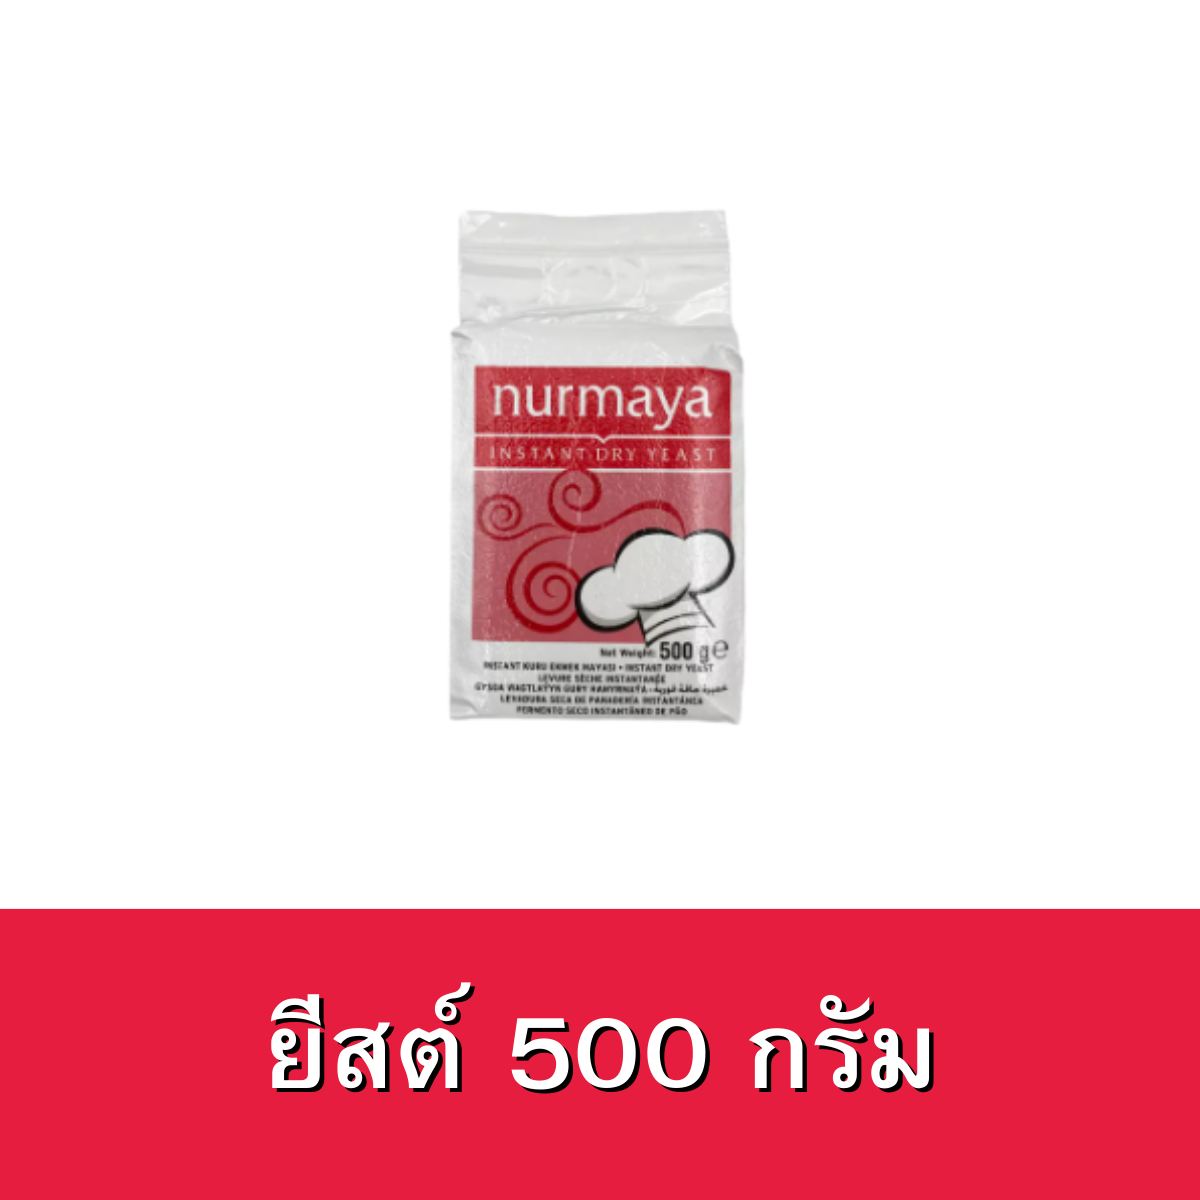 ยีสต์ ตราเนอมายา (ยีสต์ผง) ขนาด500กรัม INSTANT DRY YEAST NURMAYA 500g. Dry yeast100% ยีสต์ผสมเบเกอรี่ ยีสต์หมักขนมปัง